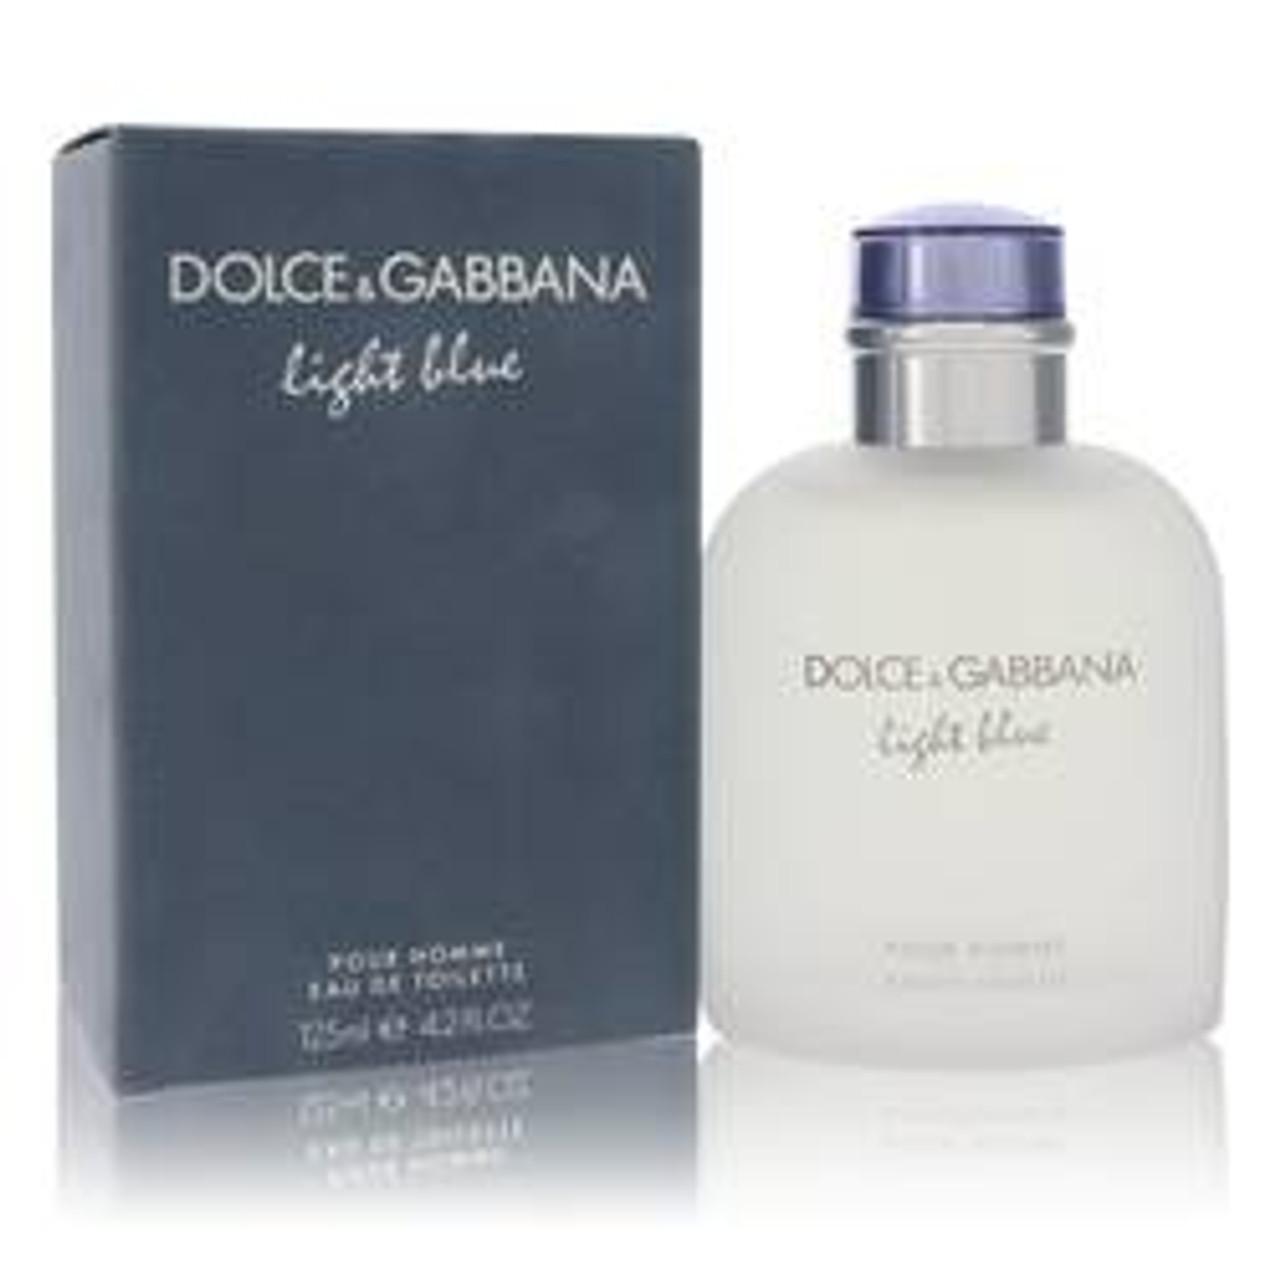 Light Blue Cologne By Dolce & Gabbana Eau De Toilette Spray 4.2 oz for Men - *Pre-Order